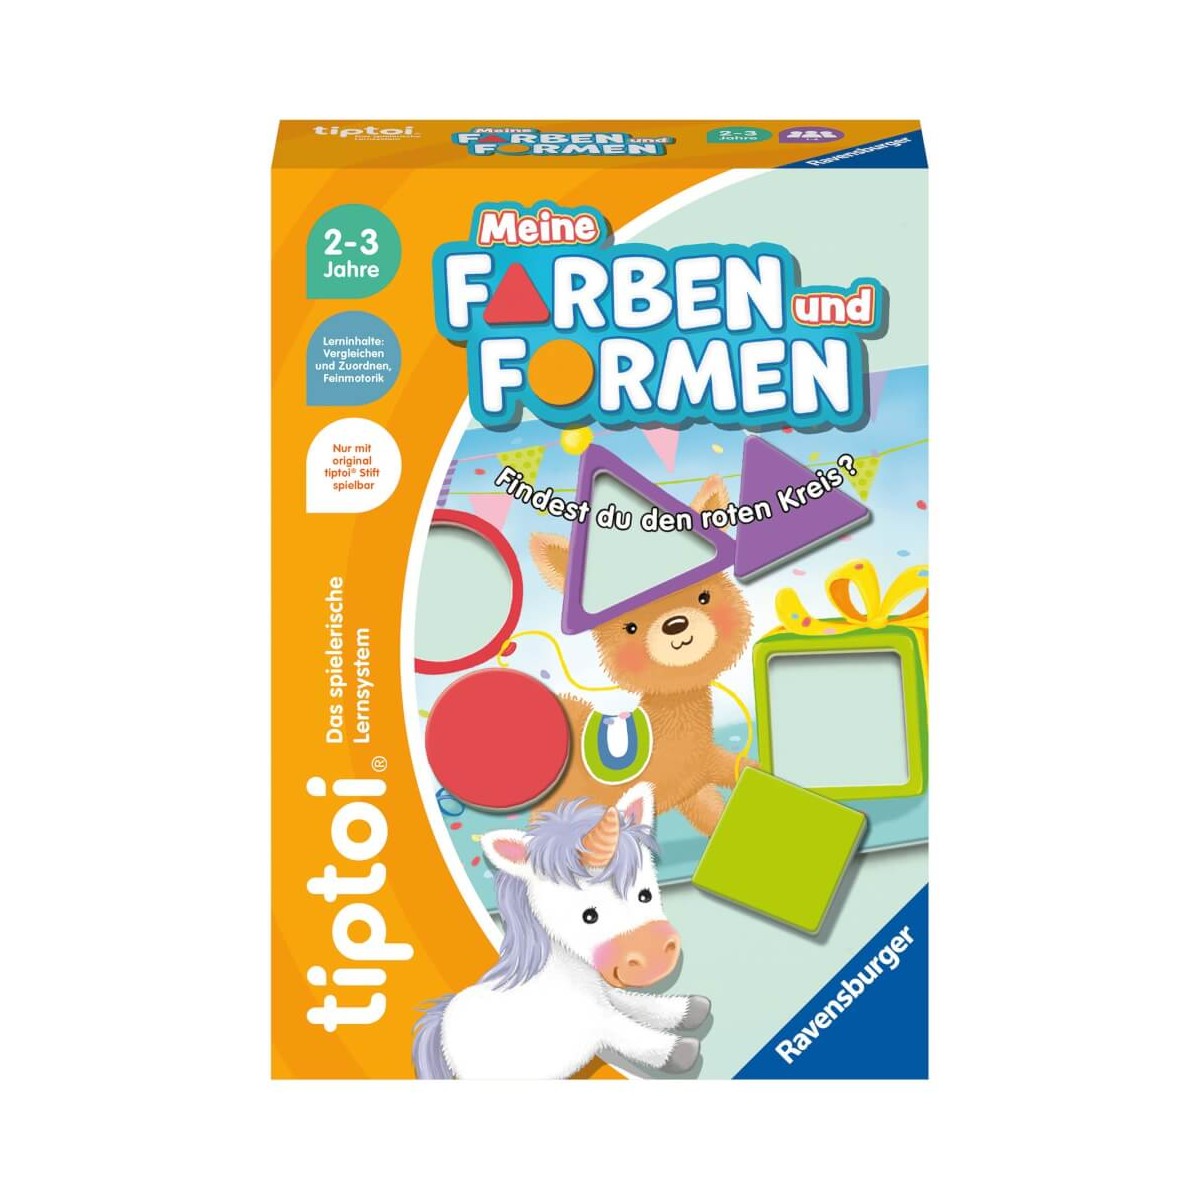 Ravensburger tiptoi Spiel 00168   Meine Farben und Formen, Lernspiel für Kinder ab 2 Jahren